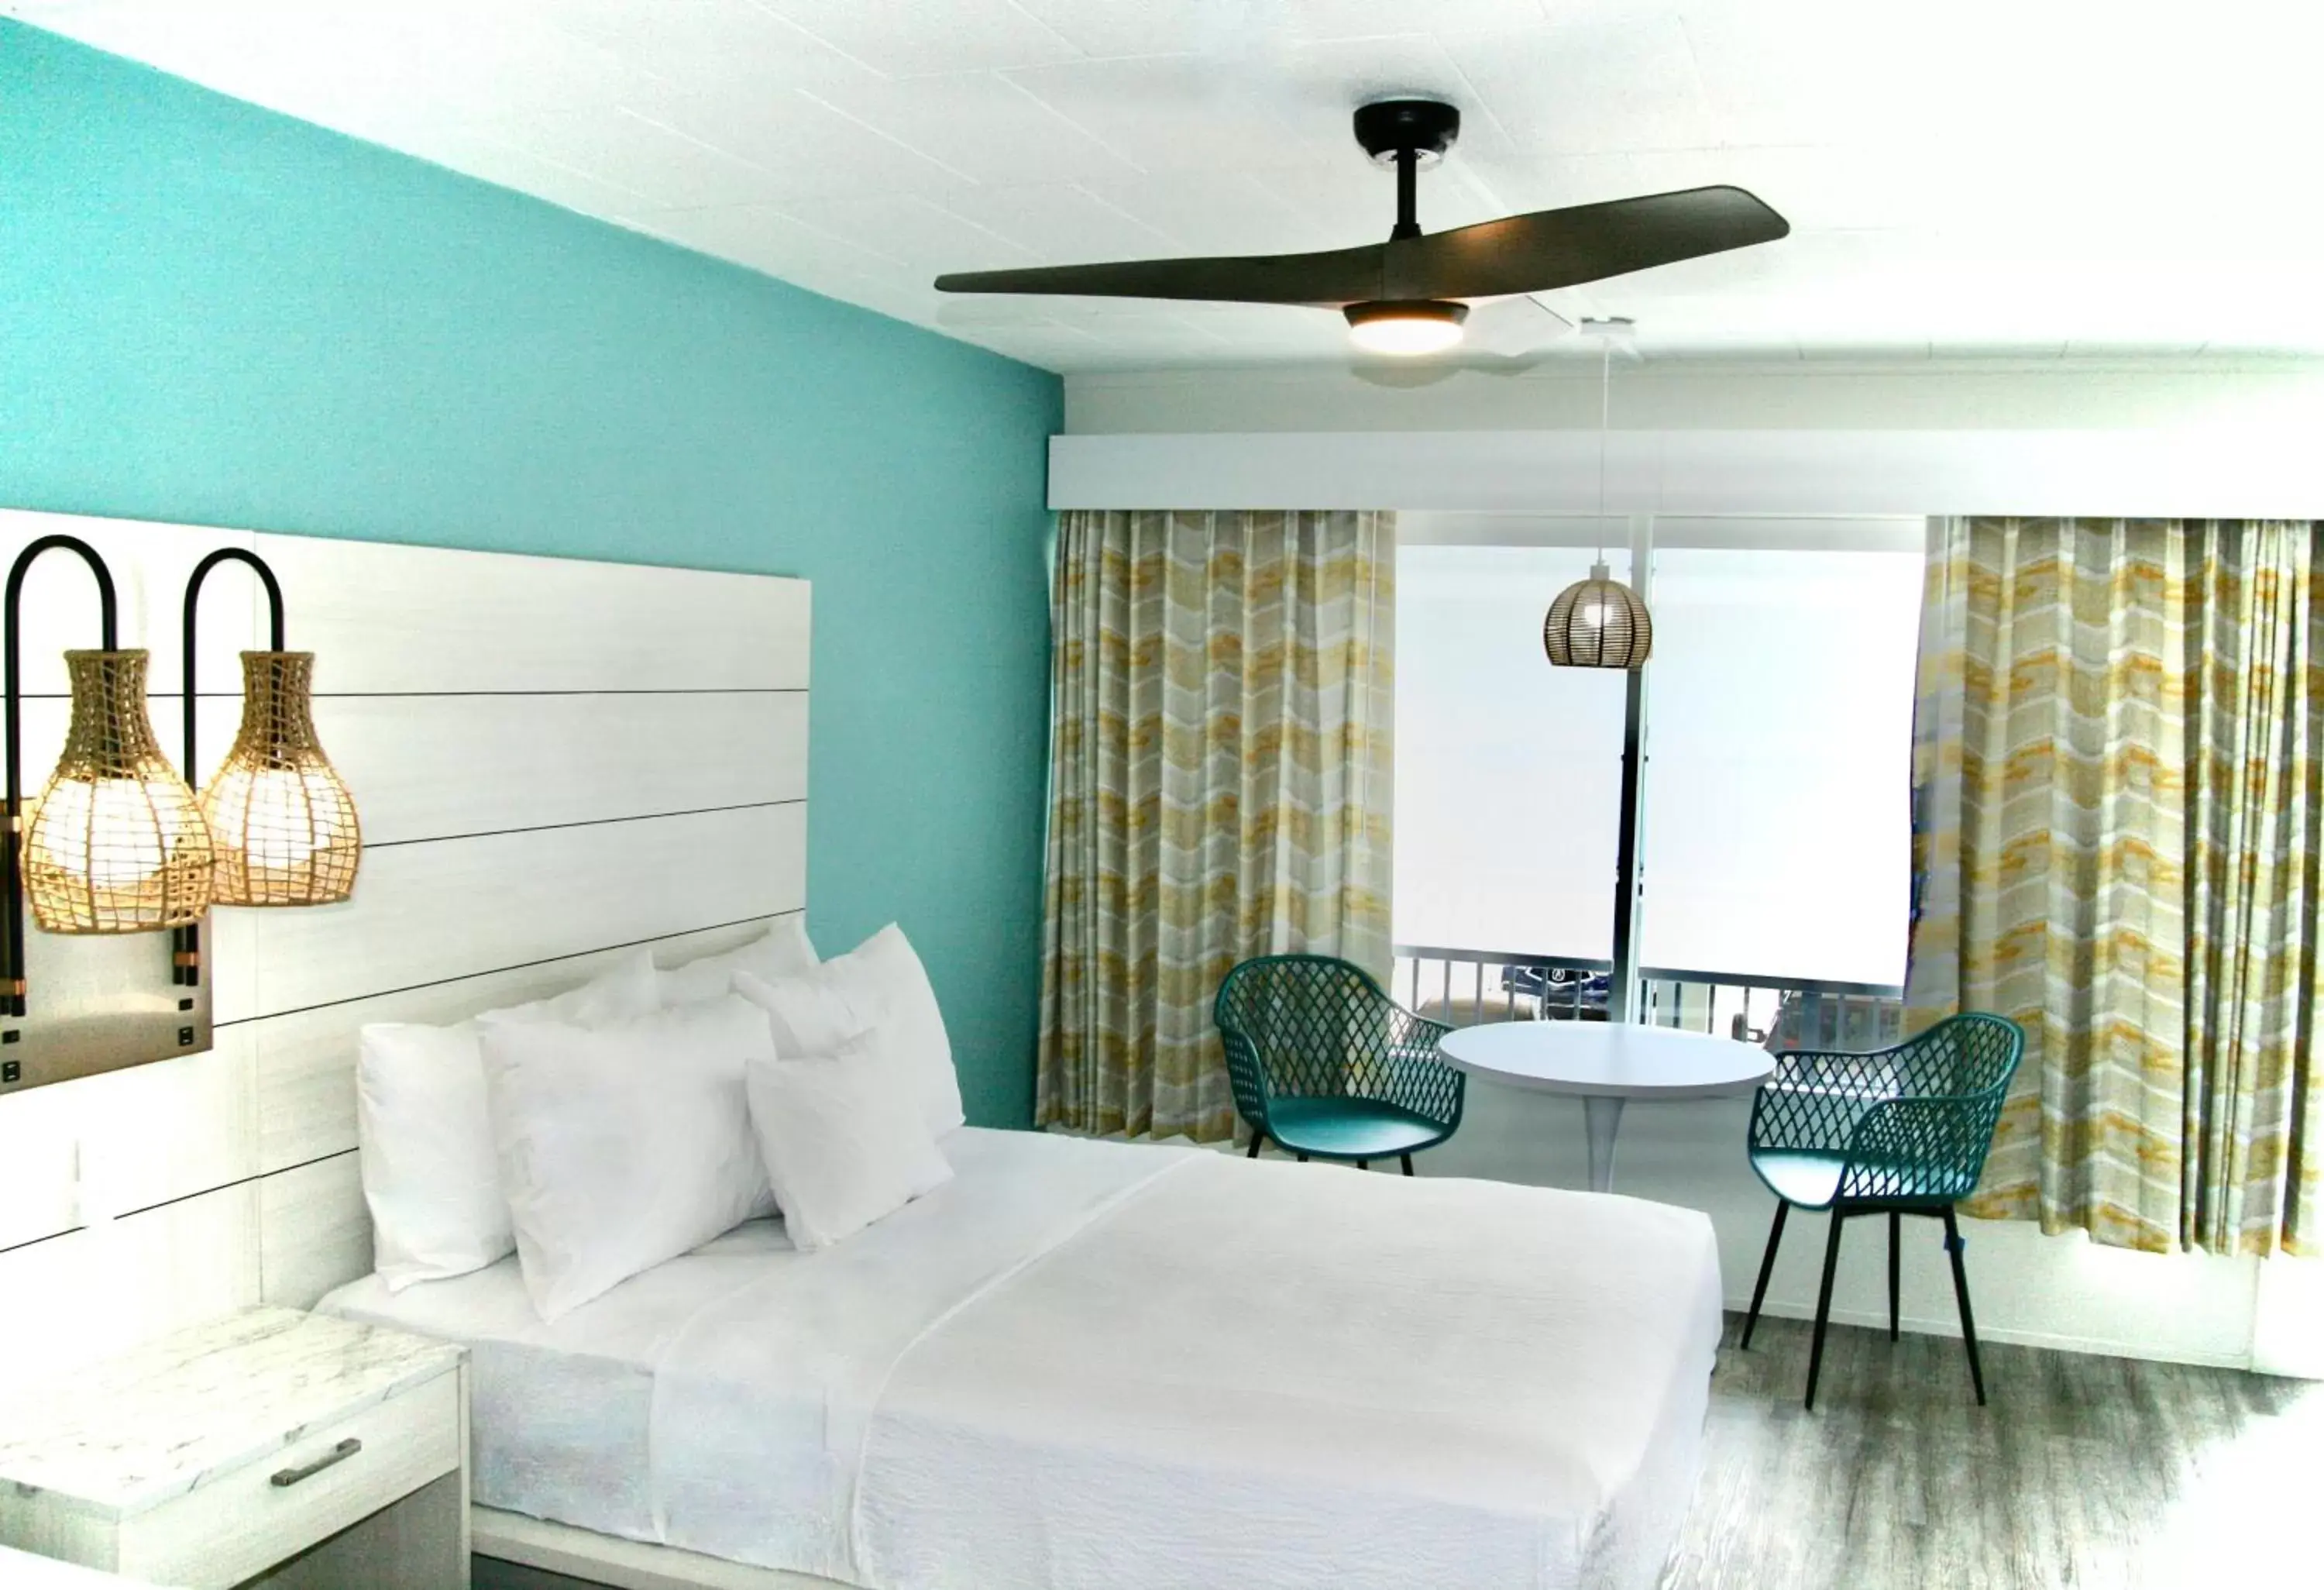 Bed in Hotel Cabana Oceanfront/Boardwalk